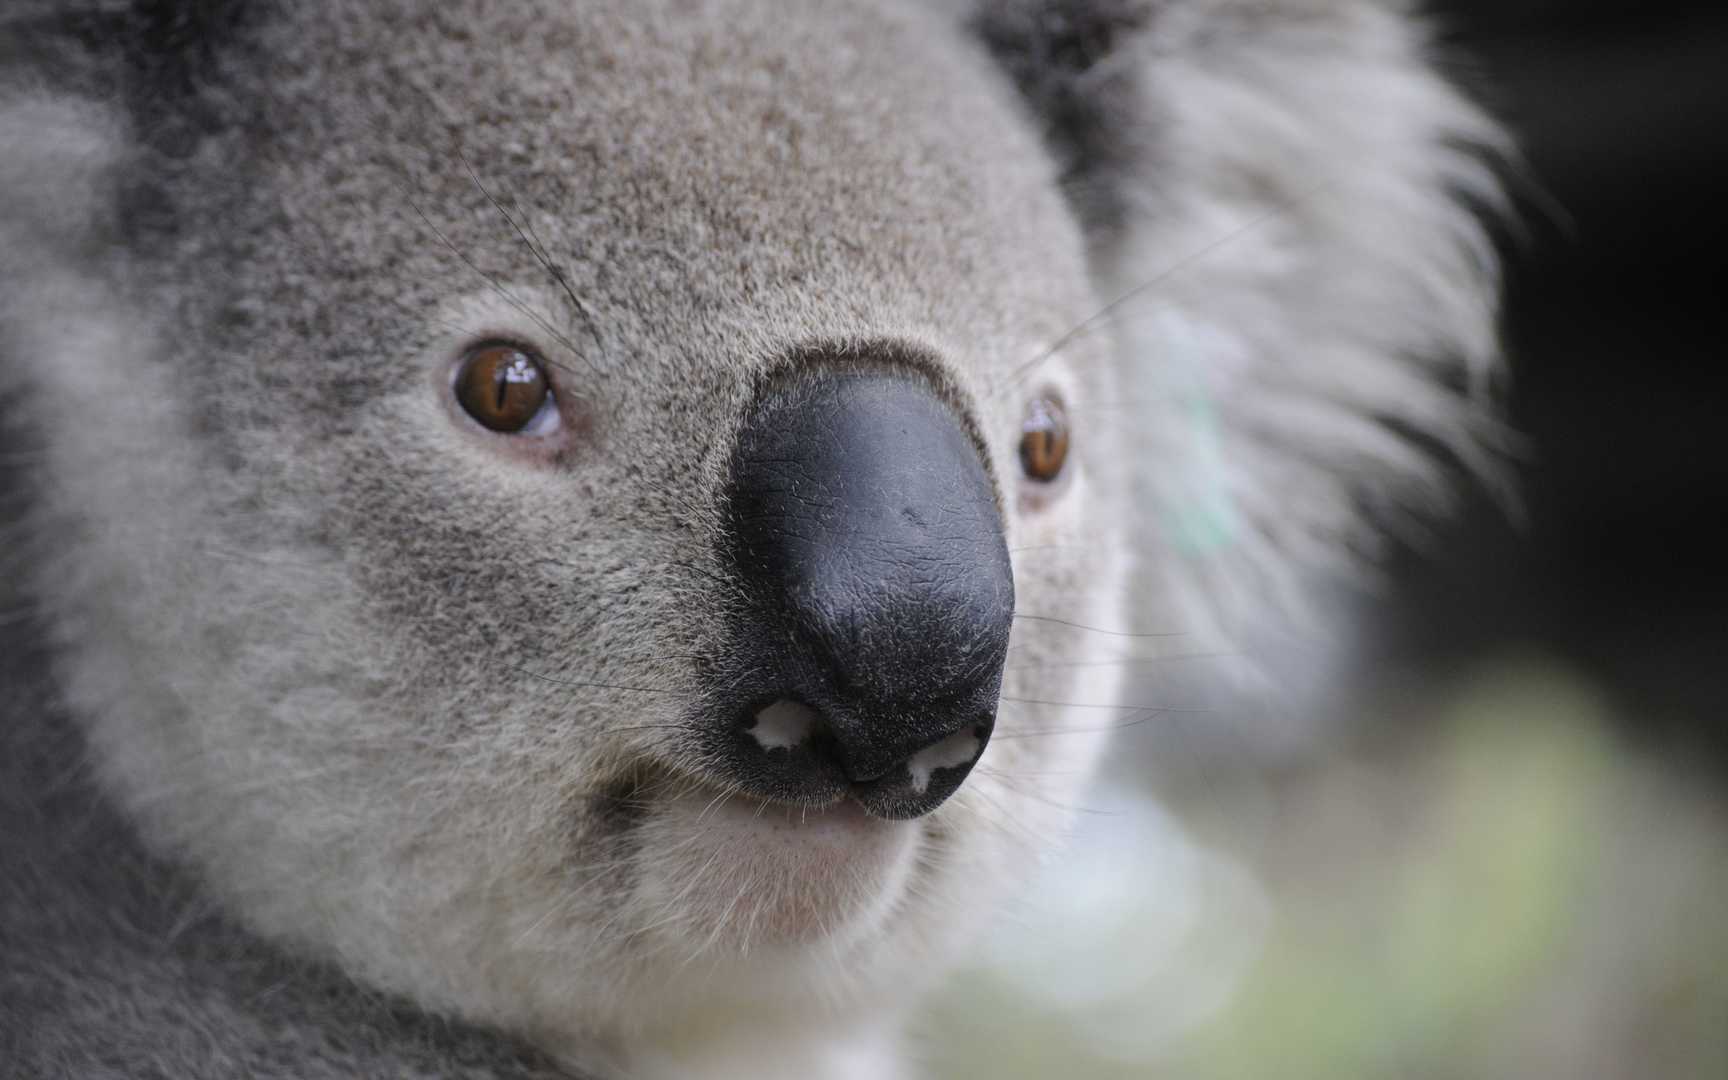 File:Cutest Koala.jpg - Wikipedia